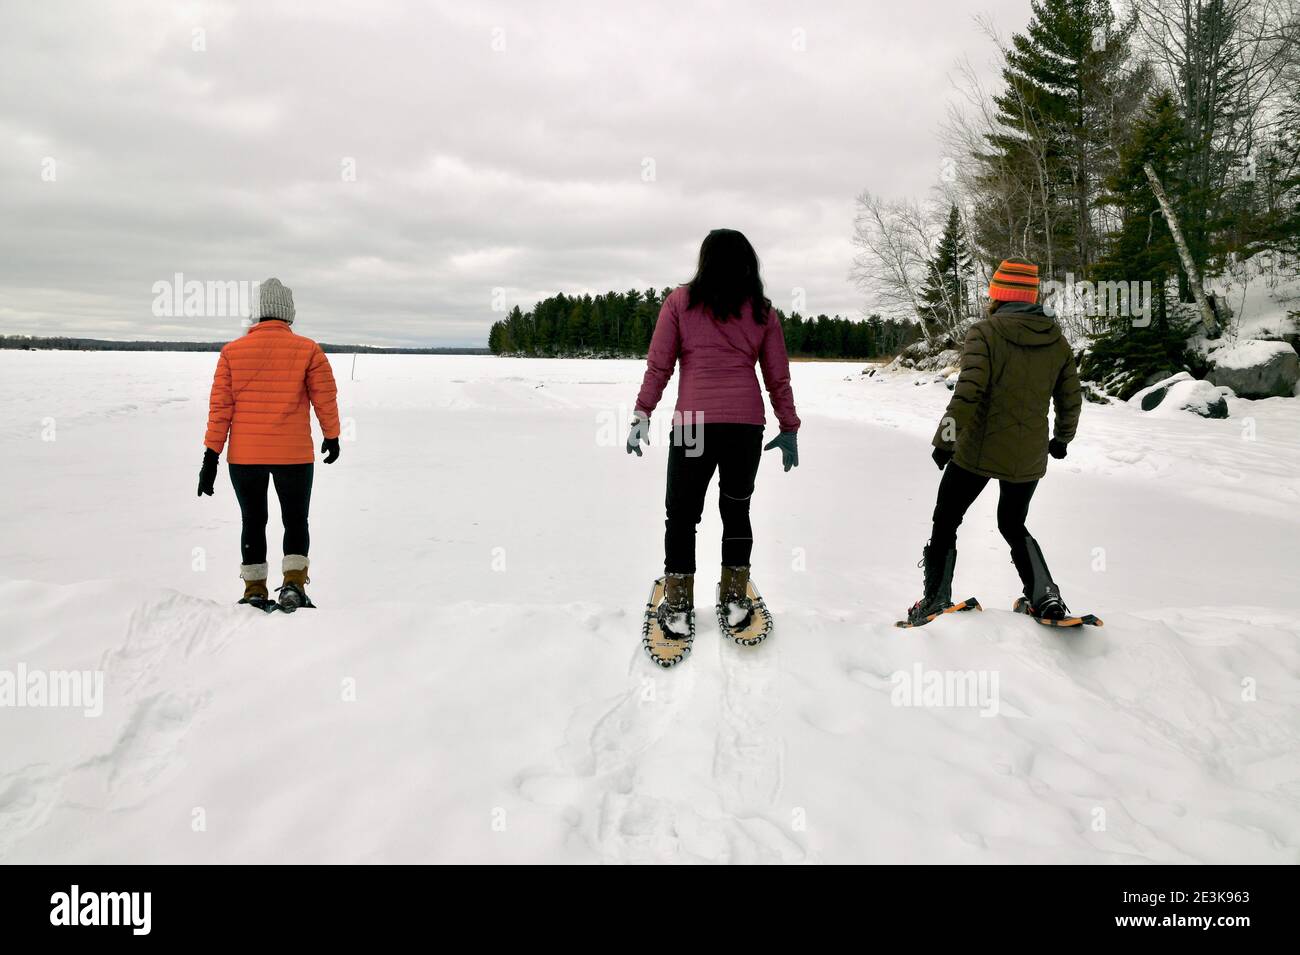 Les femmes raquette pendant l'hiver faisant des pistes de raquettes à travers le lac enneigé gelé avec un ciel hivernal nuageux et froid. Banque D'Images